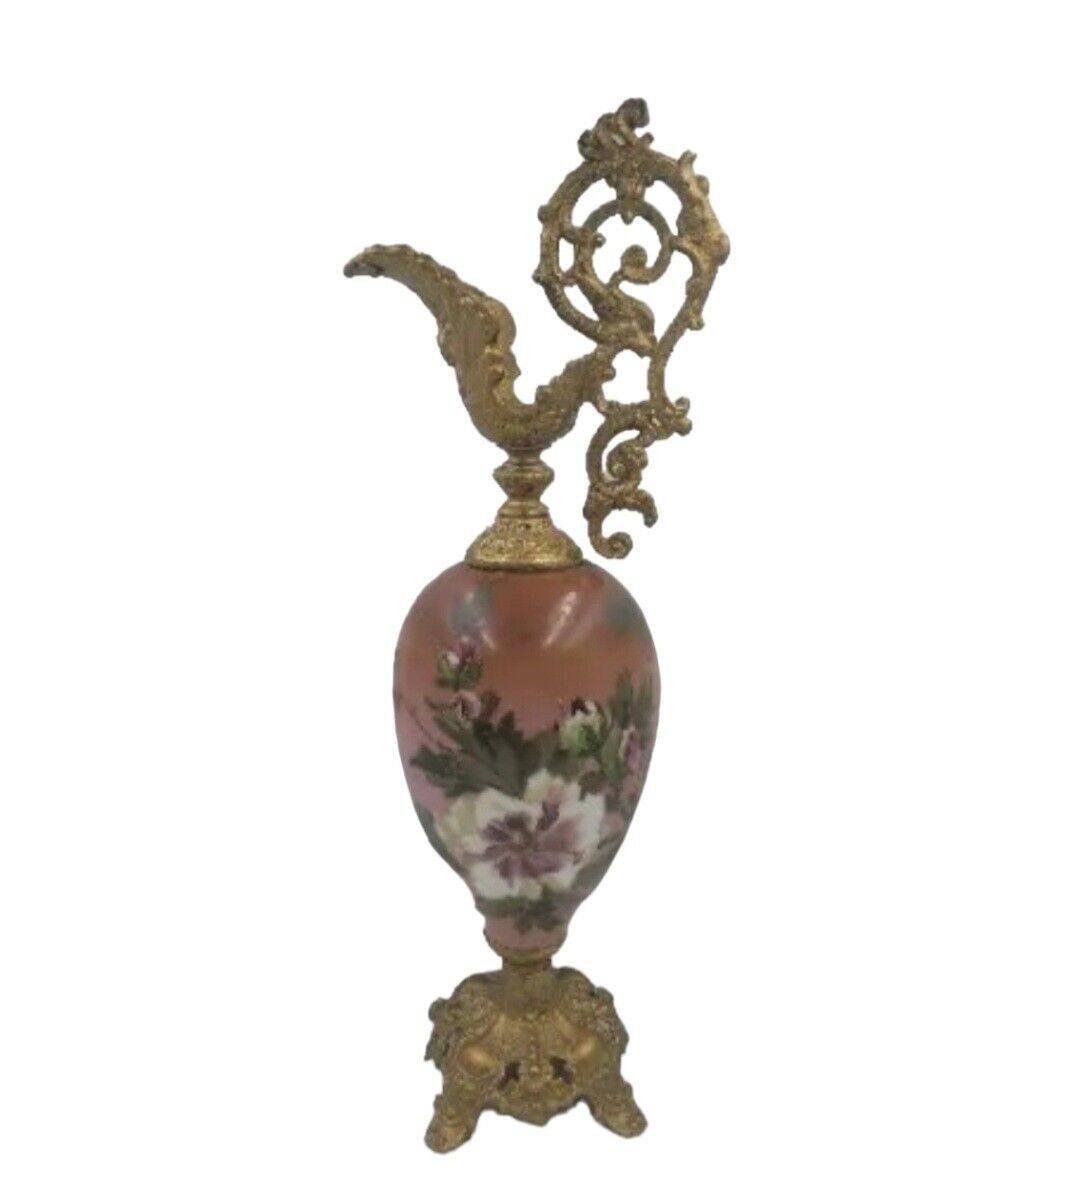 Antique Victorian Art Nouveau Mantle Ewer Vase Hand Painted Glass Roses Floral